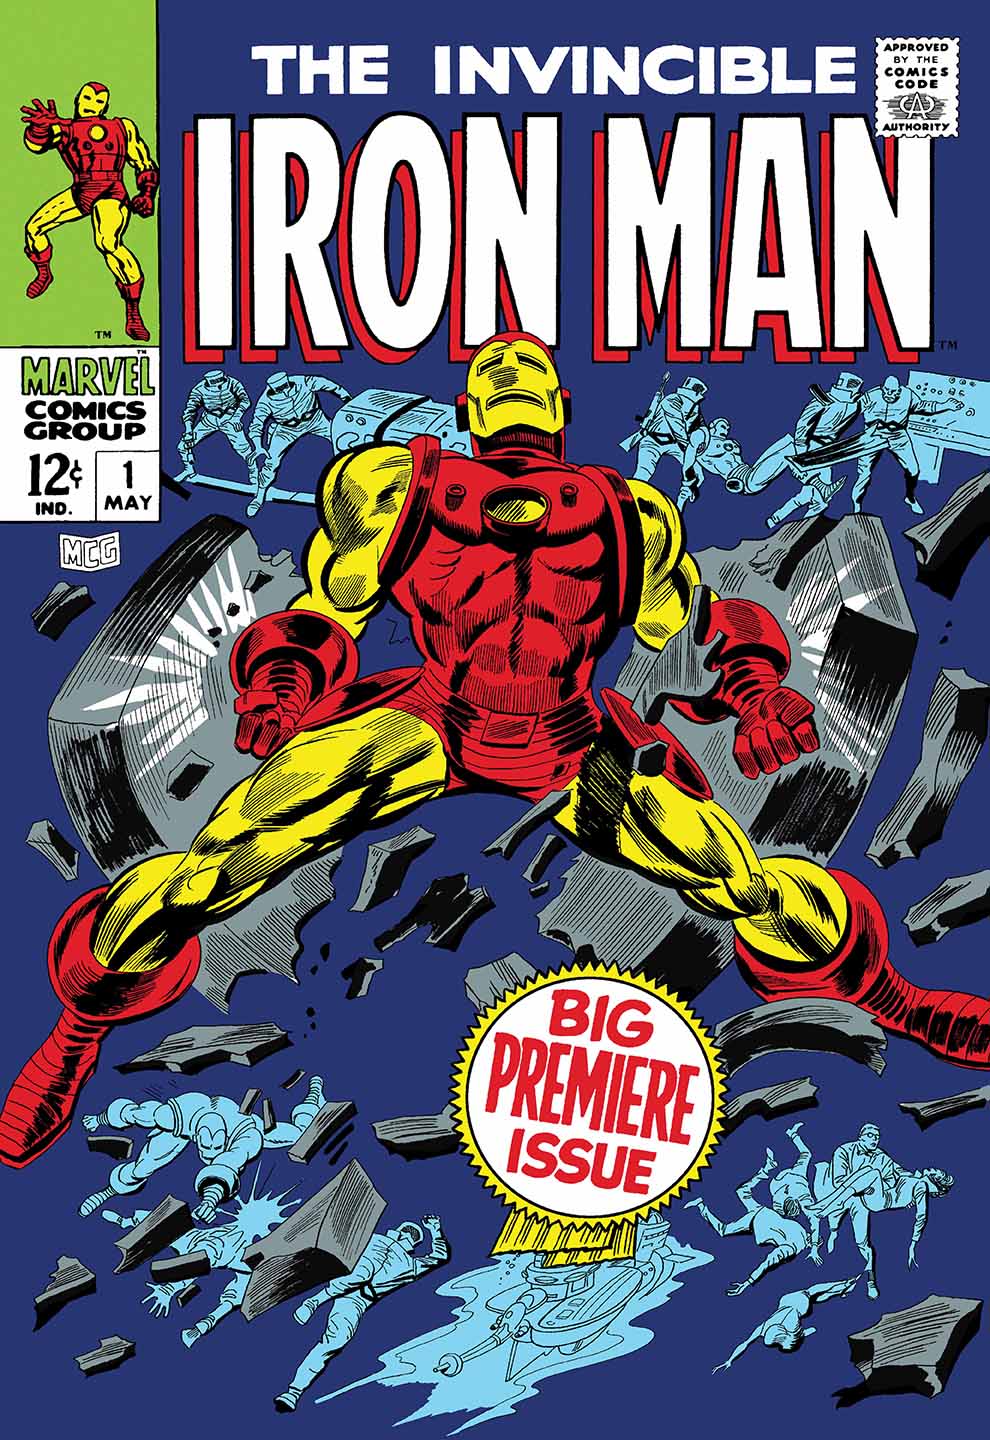 Invincible iron man #1